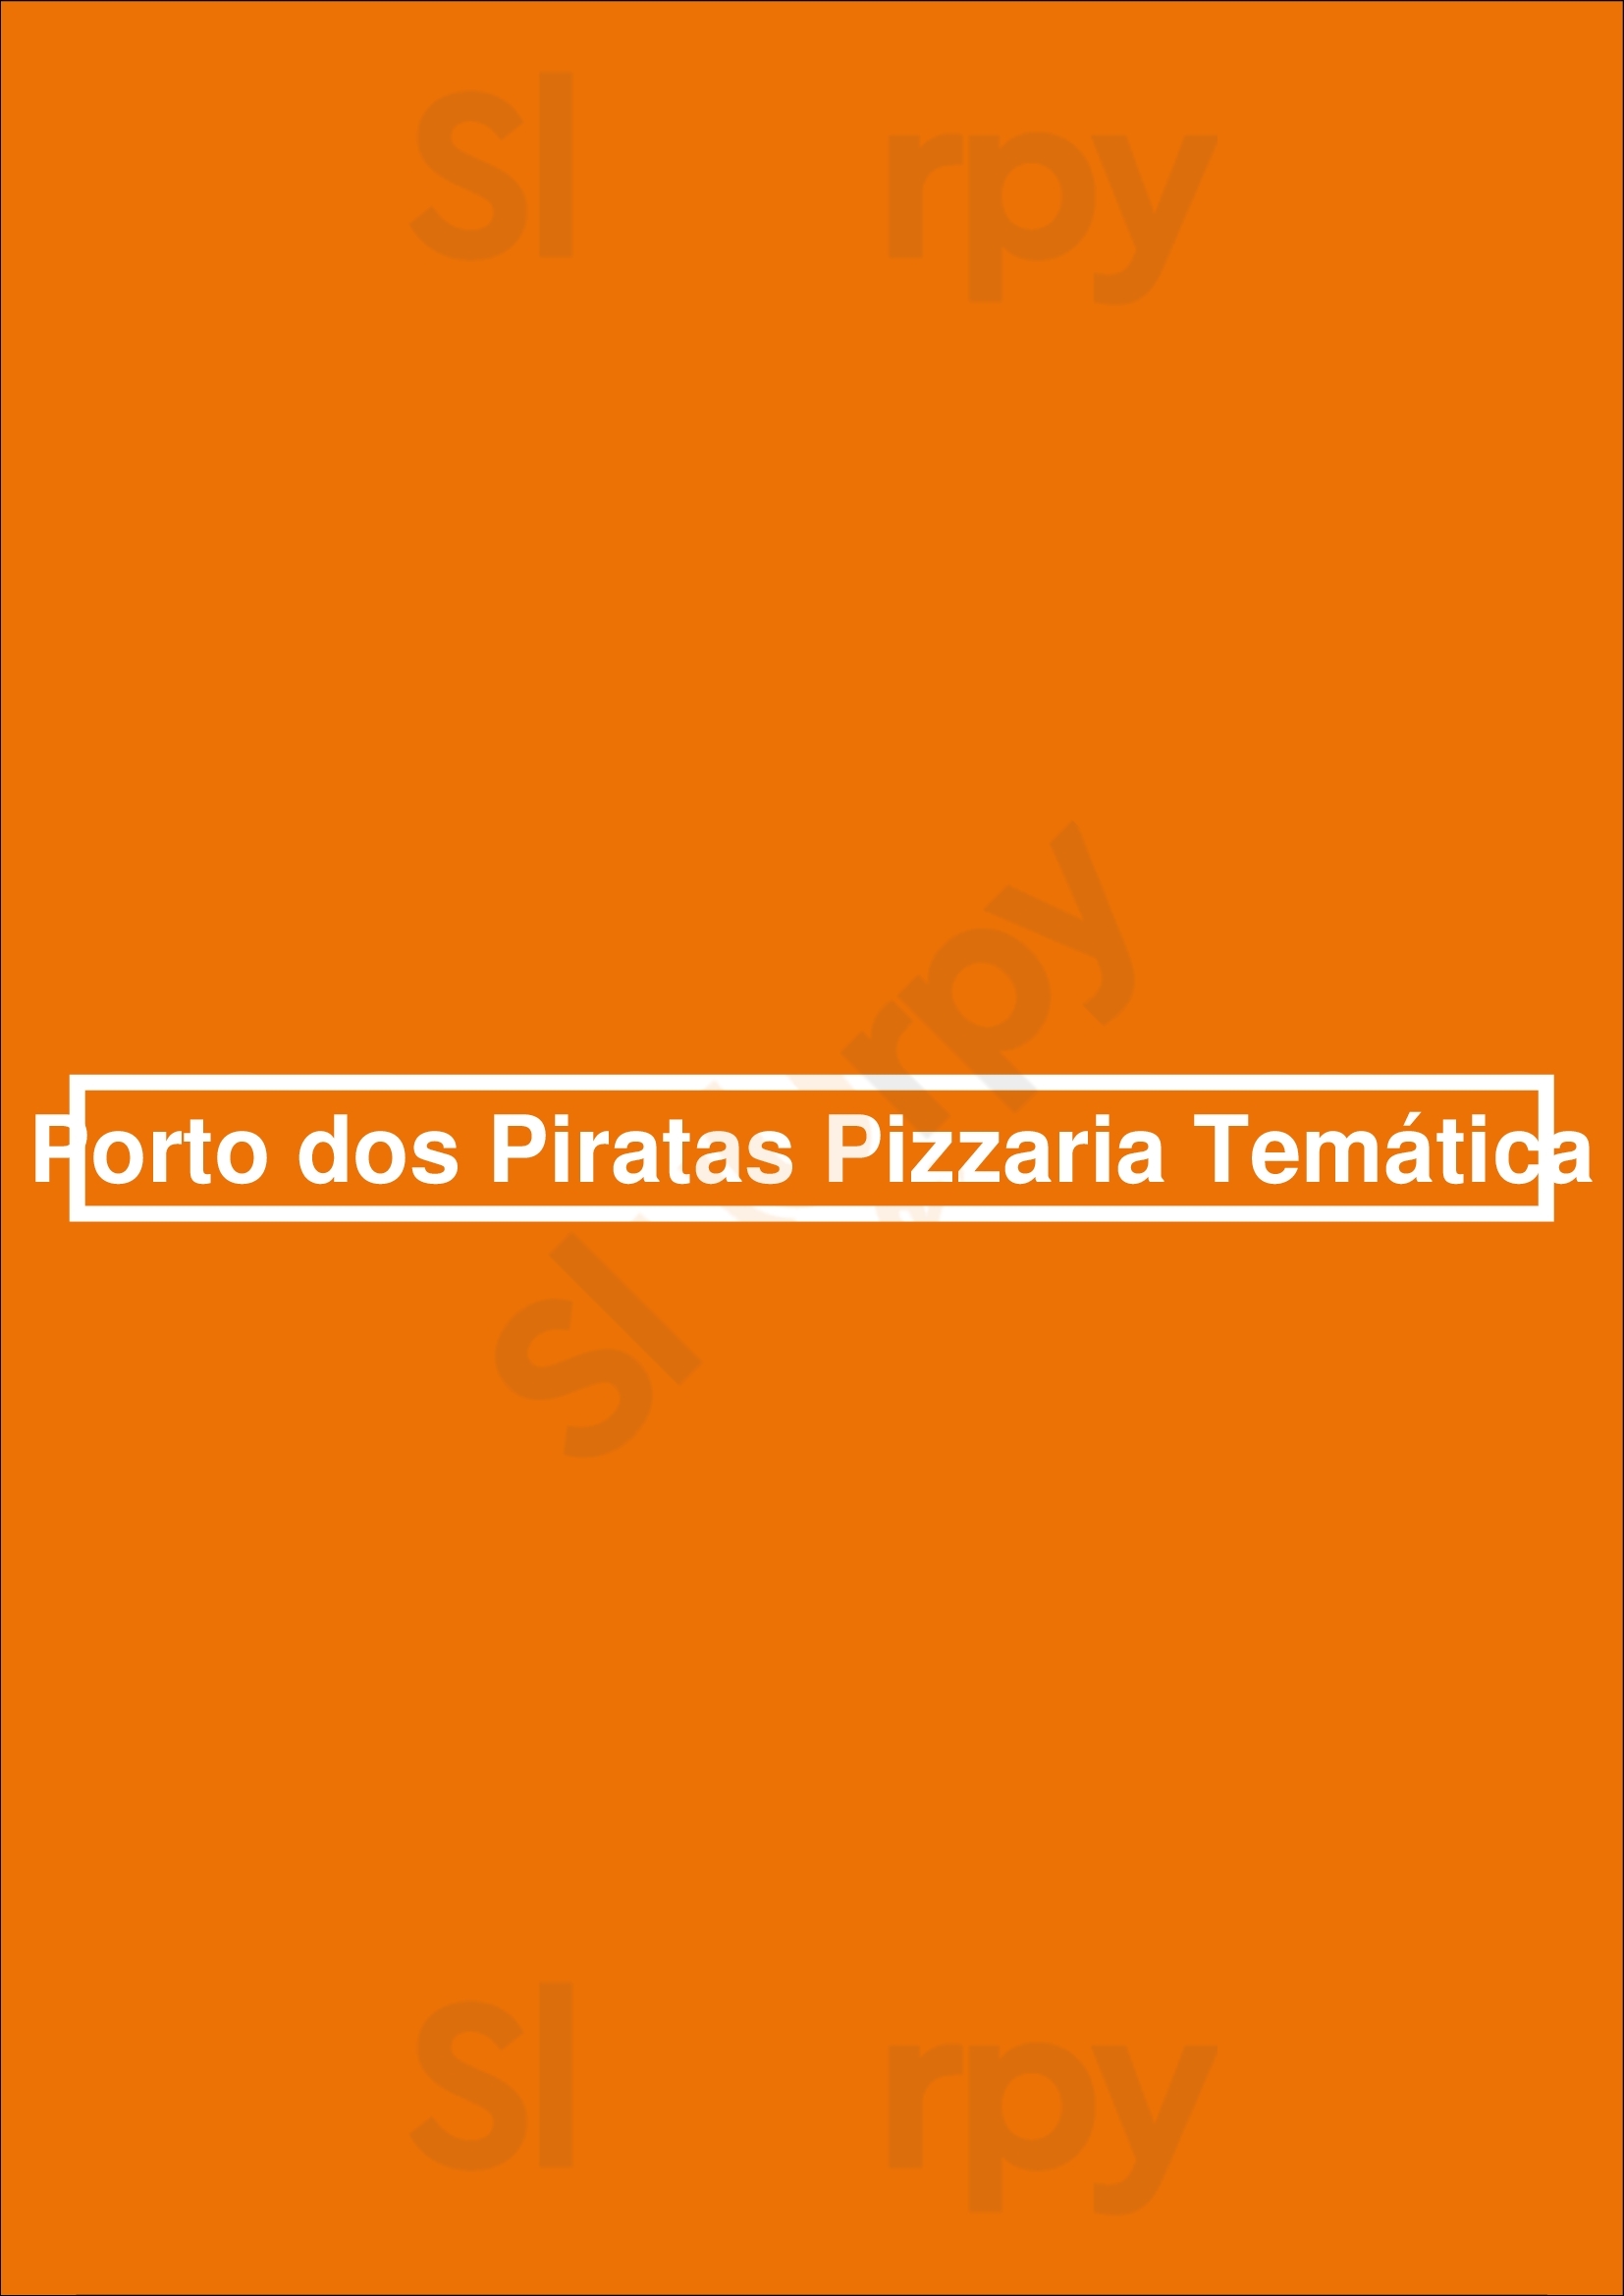 Porto Dos Piratas Pizzaria Temática Vila Nova de Famalicão Menu - 1